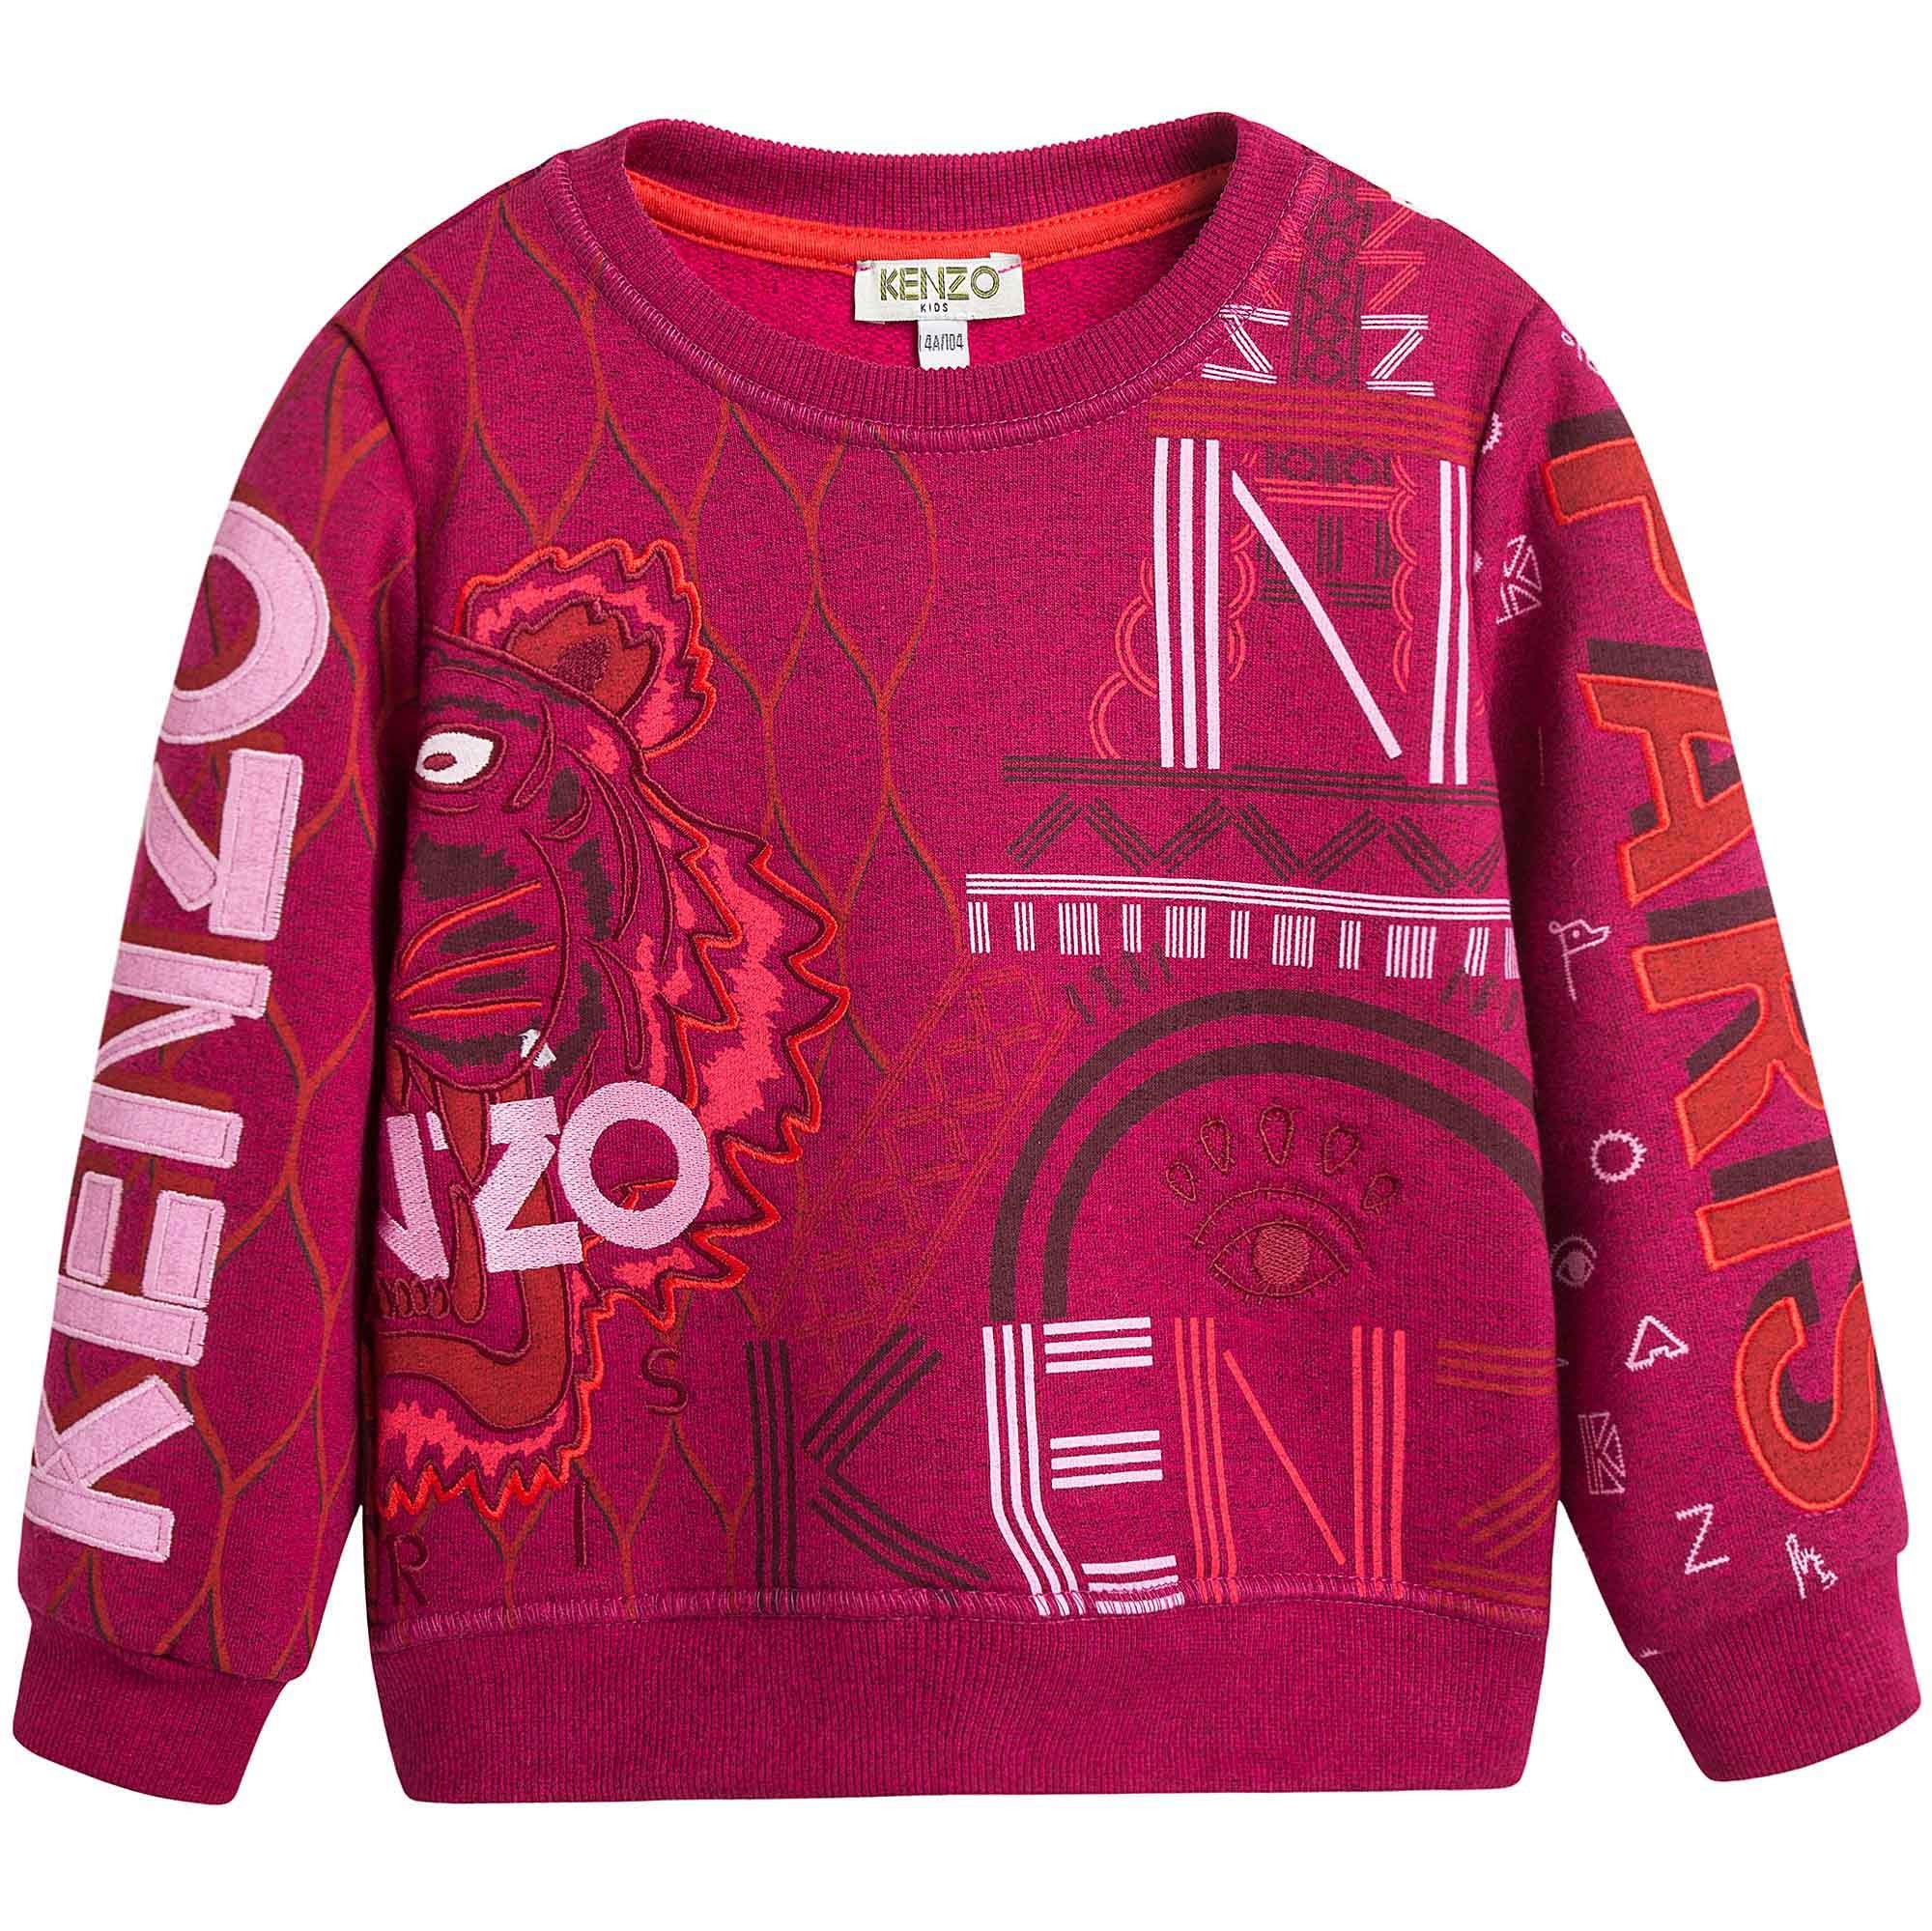 Girls Dark Pink Allover Embroidered Trims Sweatshirt - CÉMAROSE | Children's Fashion Store - 1